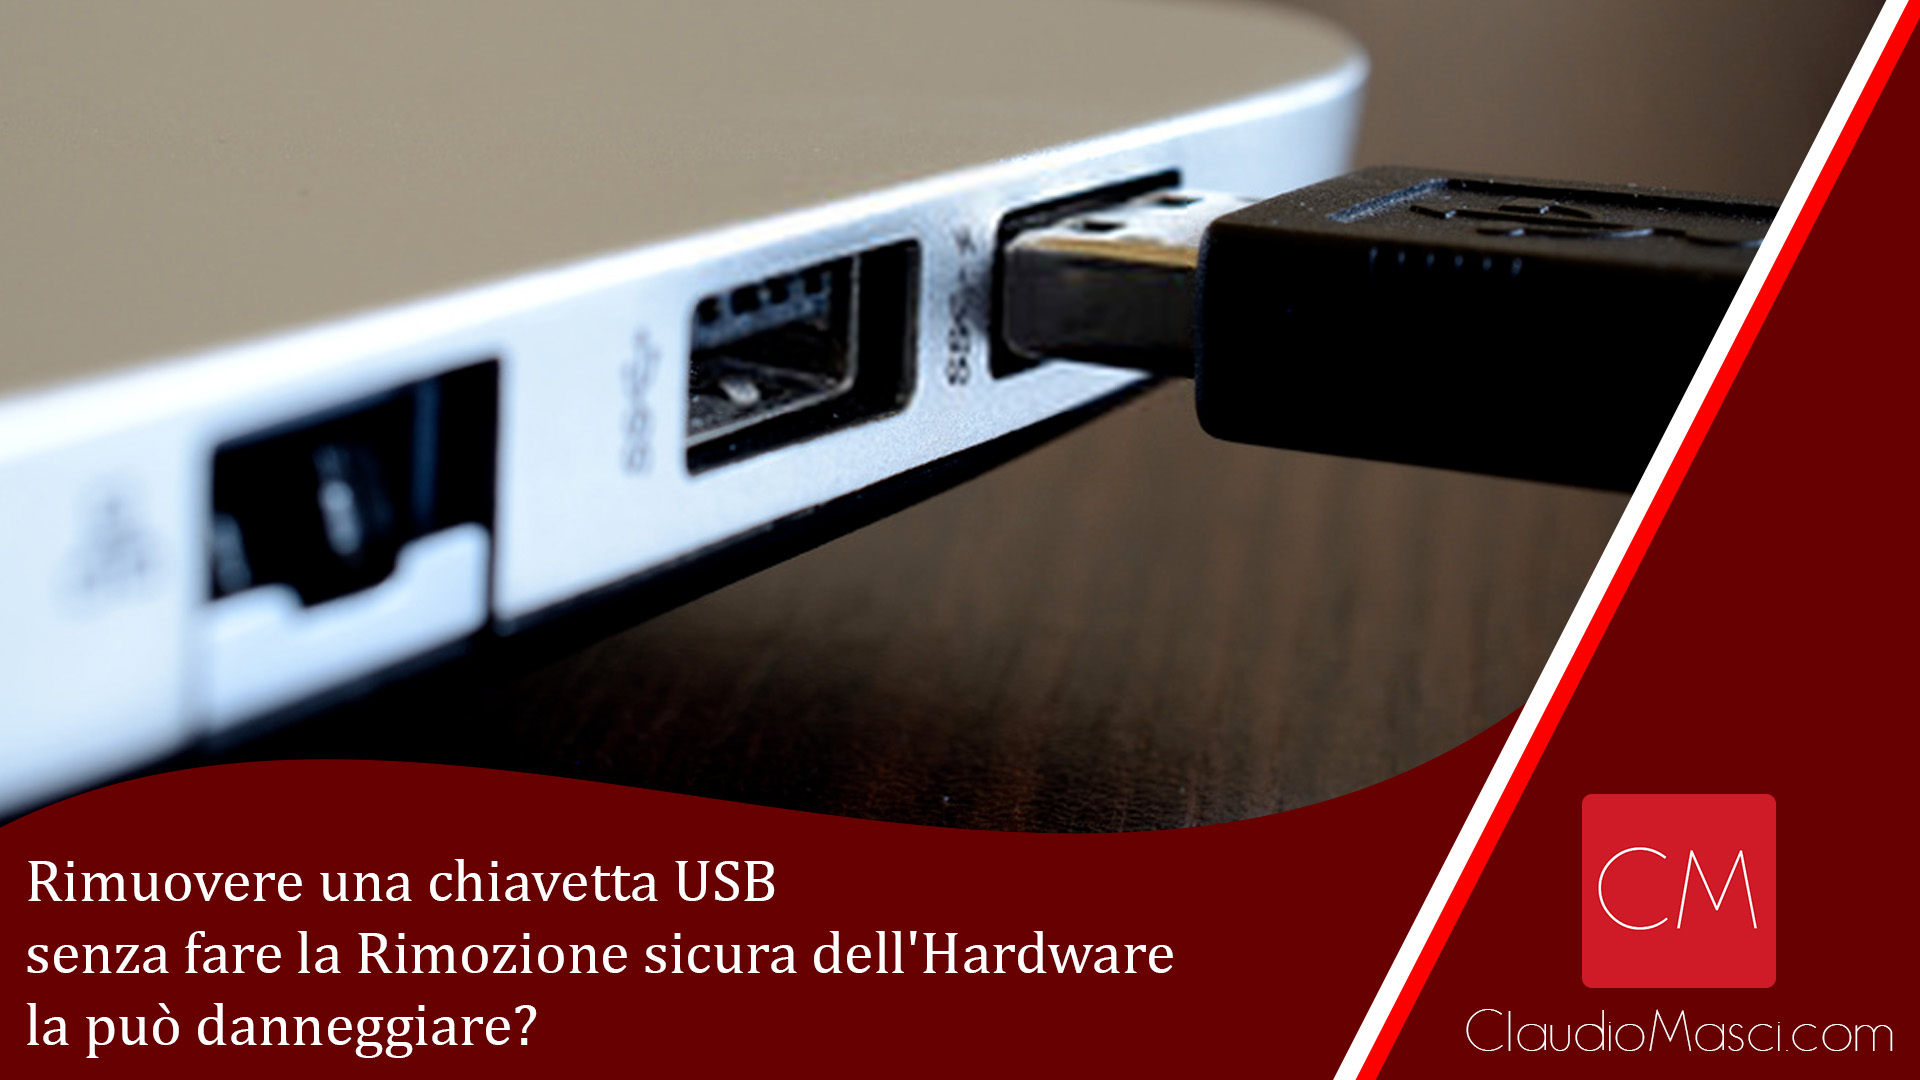 Rimuovere una chiavetta USB senza fare la Rimozione sicura dell’Hardware la può danneggiare?